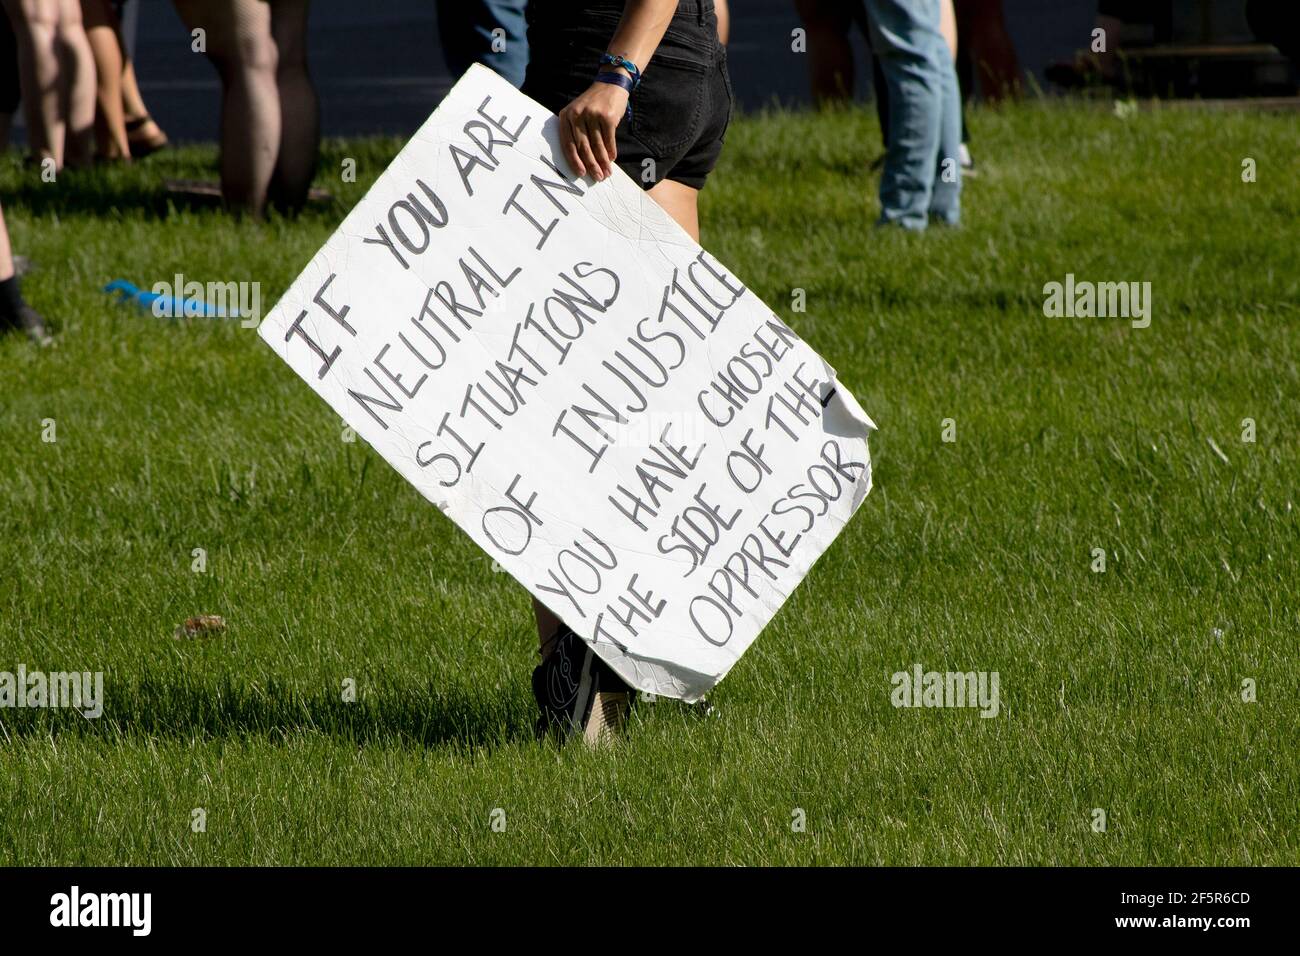 Weiße Hand hält Plakat für friedlichen Protest über soziale gemacht Gerechtigkeit Stockfoto